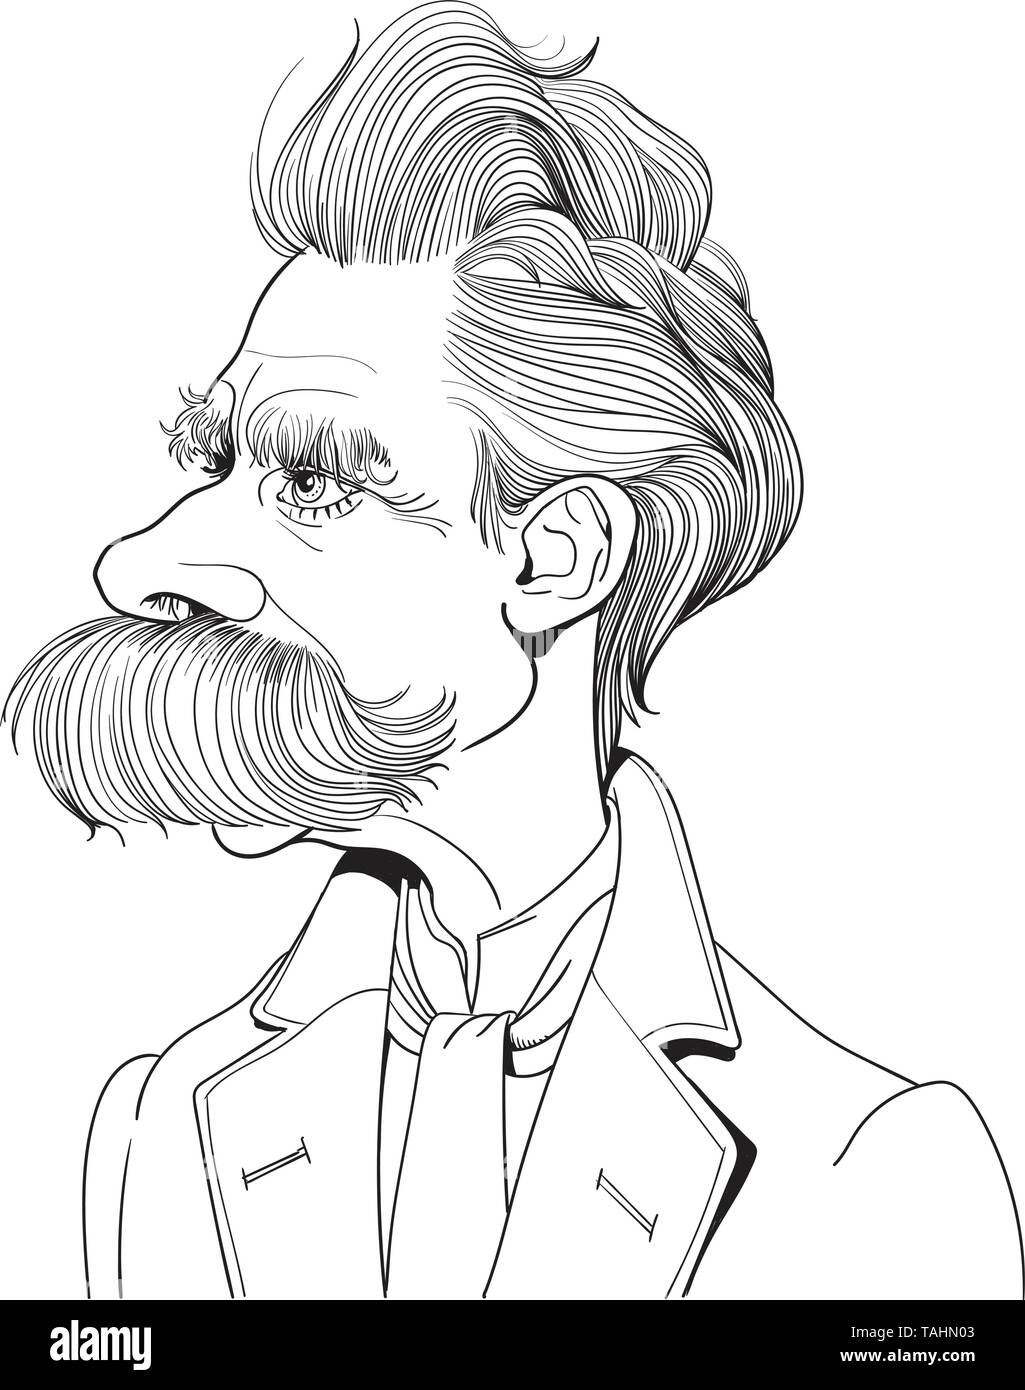 Friedrich Nietzsche (1844-1900) Porträt in Line Art. Er war deutscher Philosoph, Philologe, Dichter, Komponist und klassischer Philologe. Stock Vektor